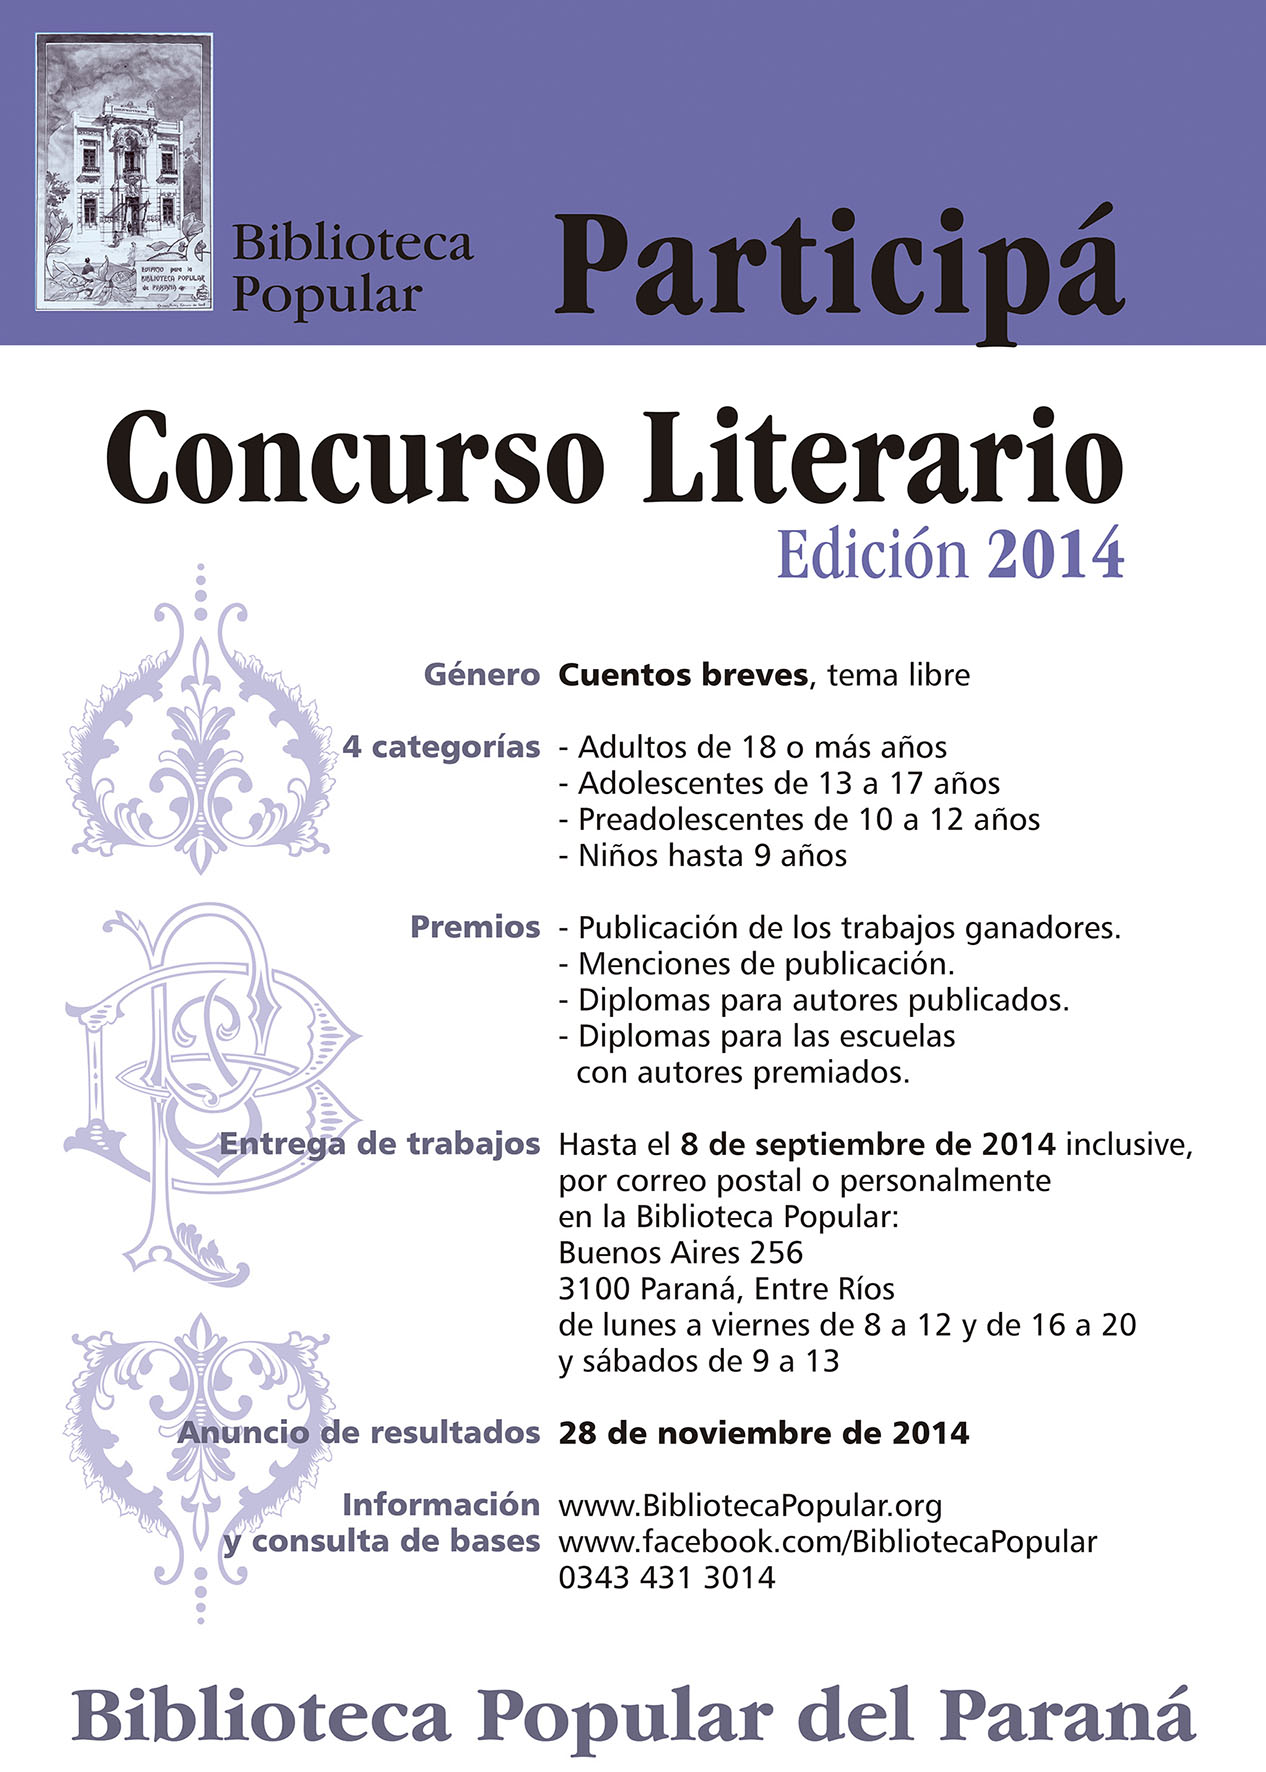 Afiche promocional del Concurso Biblioteca Popular del Paraná, Edición 2014